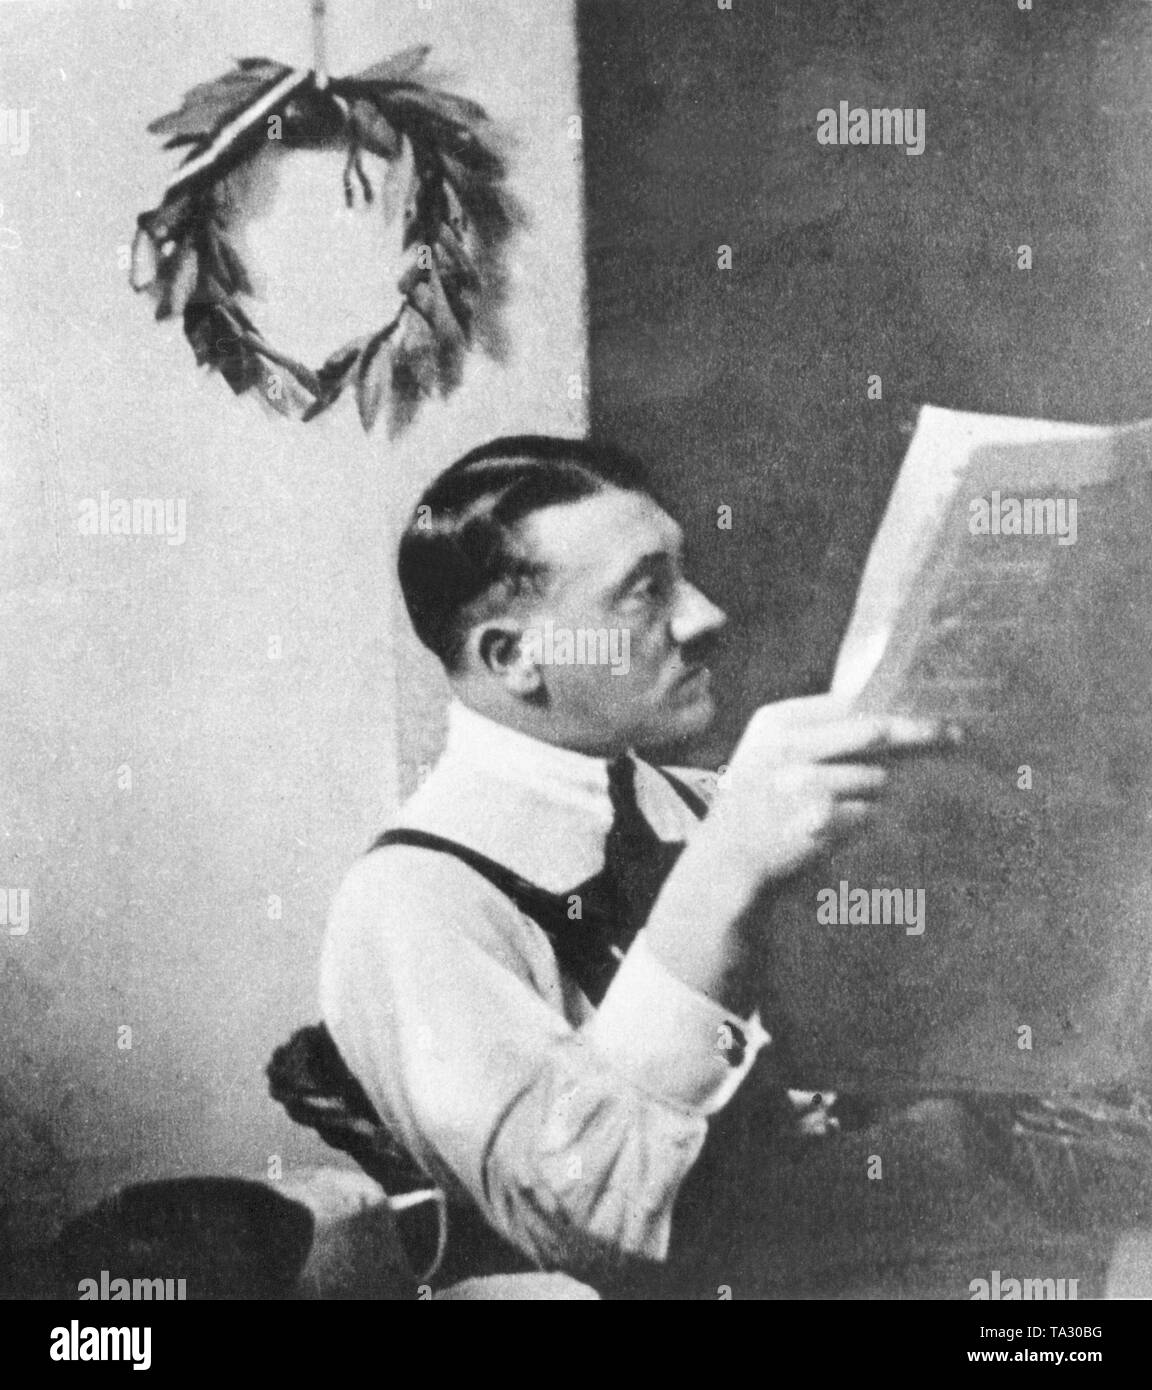 Adolf Hitler mit einem Lorbeerkranz der alten Gewinner, voller Symbolik, die an der Wand hängen in seiner Zelle im Gefängnis in Landsberg am Lech, wo er seine Strafe kurz nach dem gescheiterten Putschversuch am 9. November 1923 in München serviert. Stockfoto